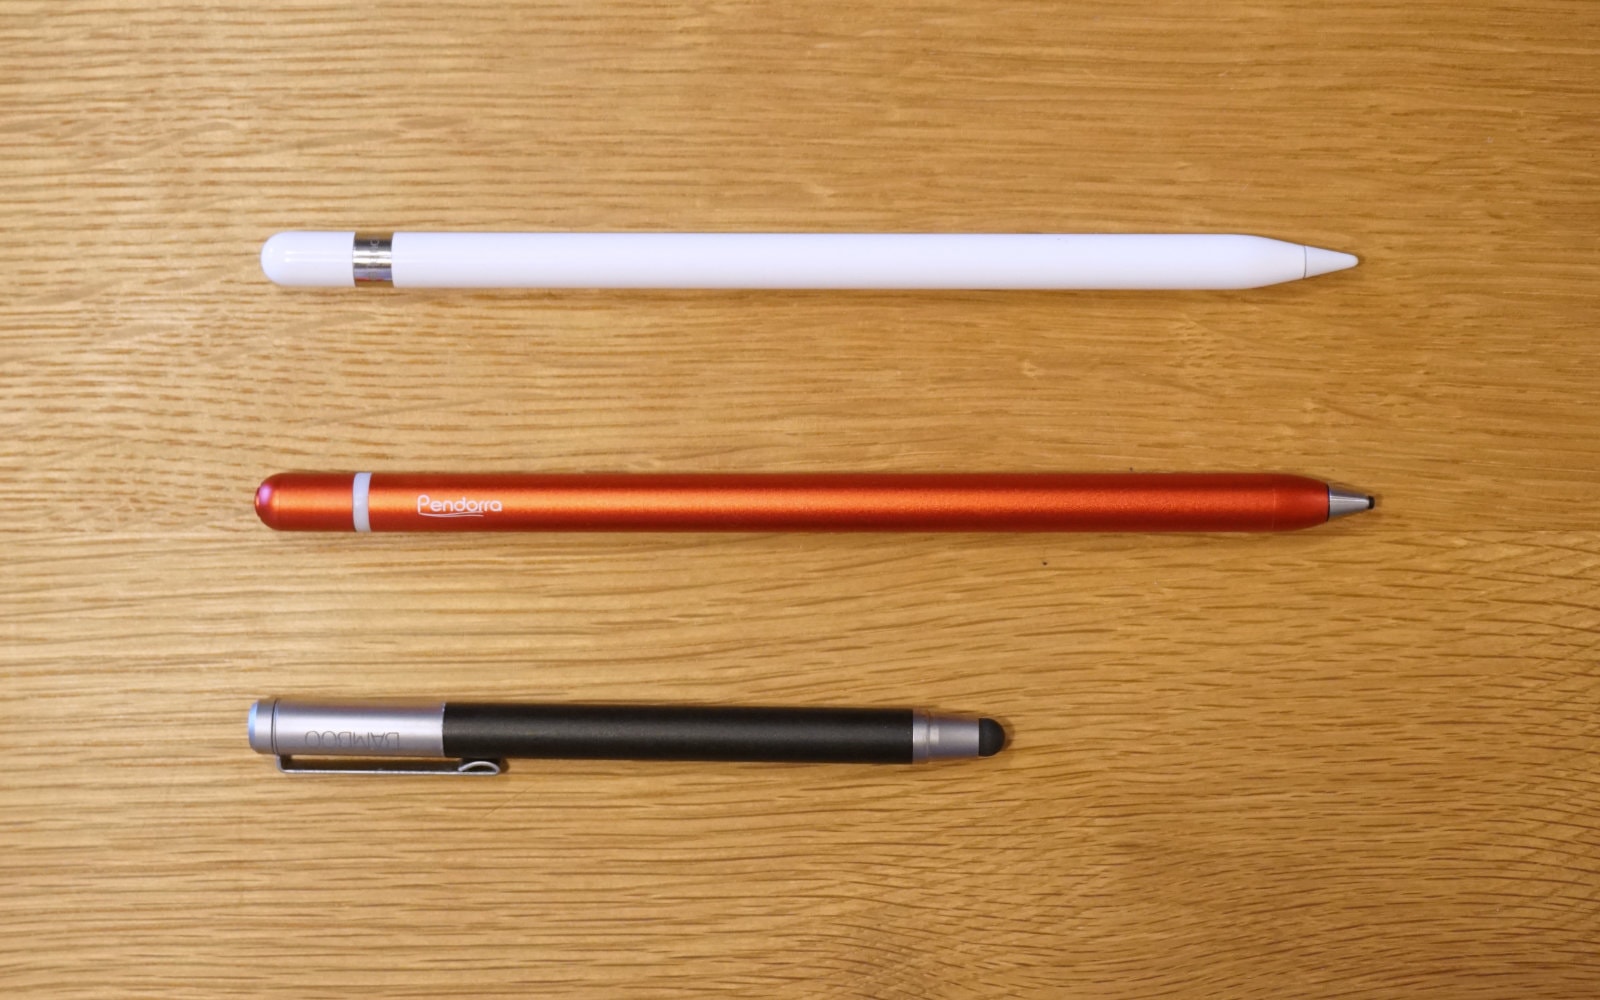 Apple Pencil、Pendorra、Bambooの3本のタッチペン